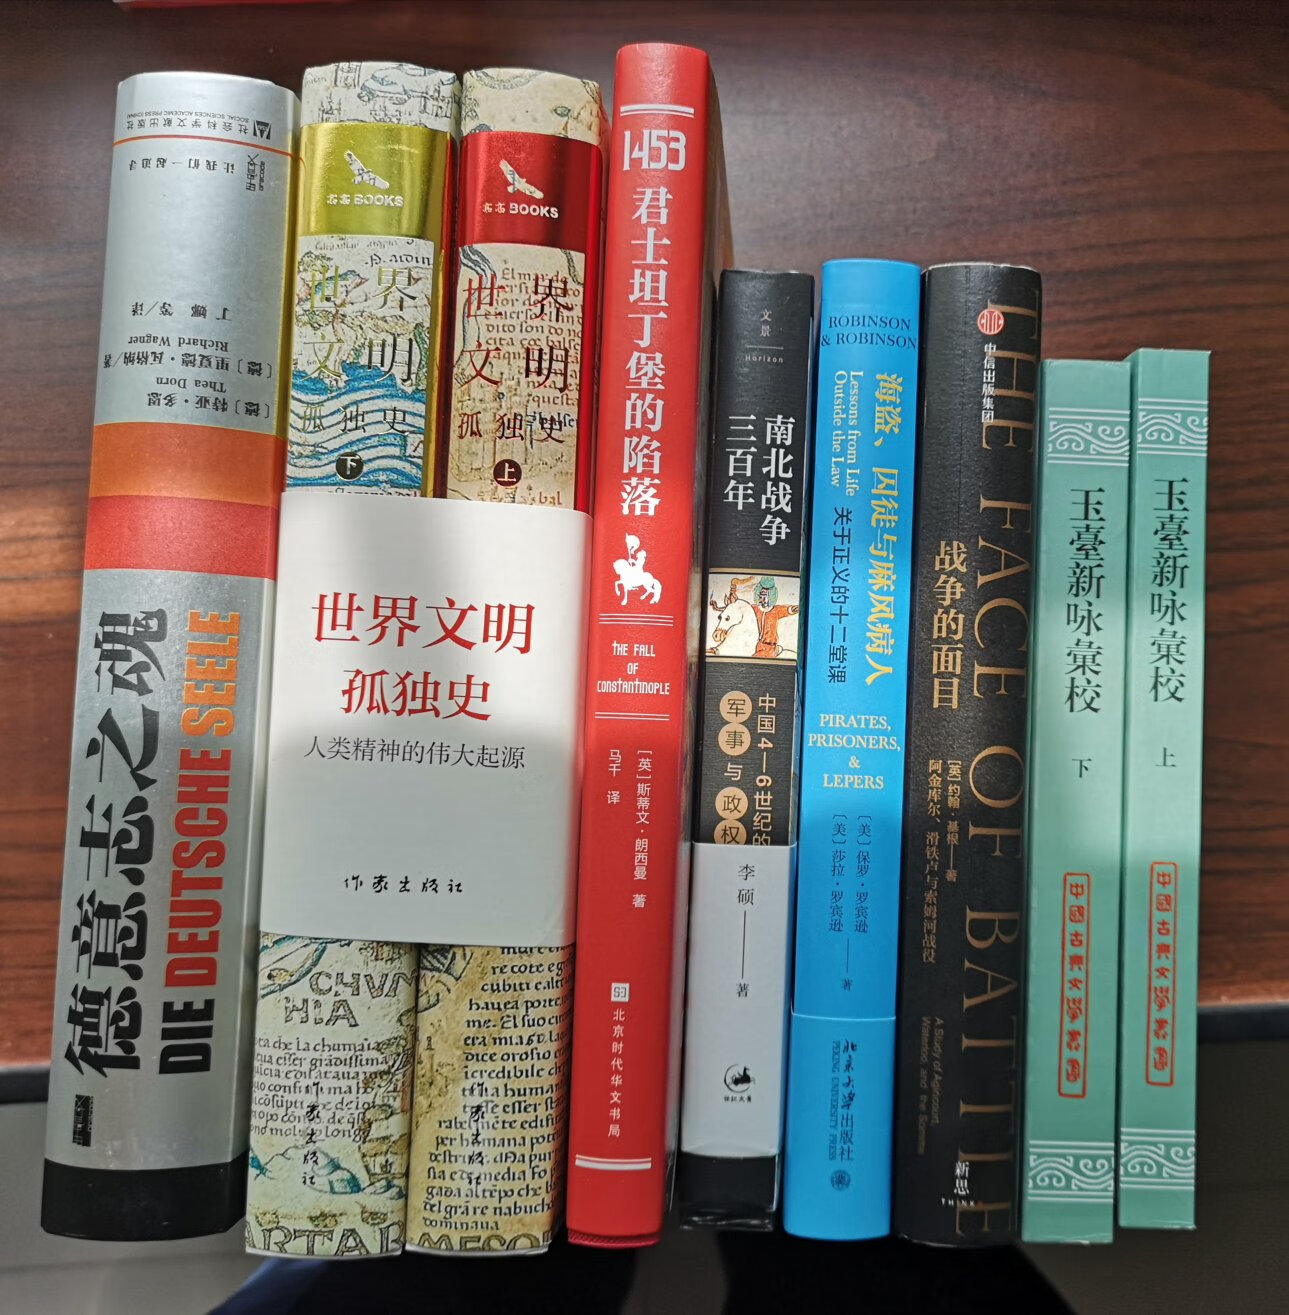 《世界文明孤独史》是从全新视角写的一部文明史，尤其是对华夏文明与世界文明中做了对比解读，很精彩。精装，装印、纸张、印刷都很好。强烈推荐！